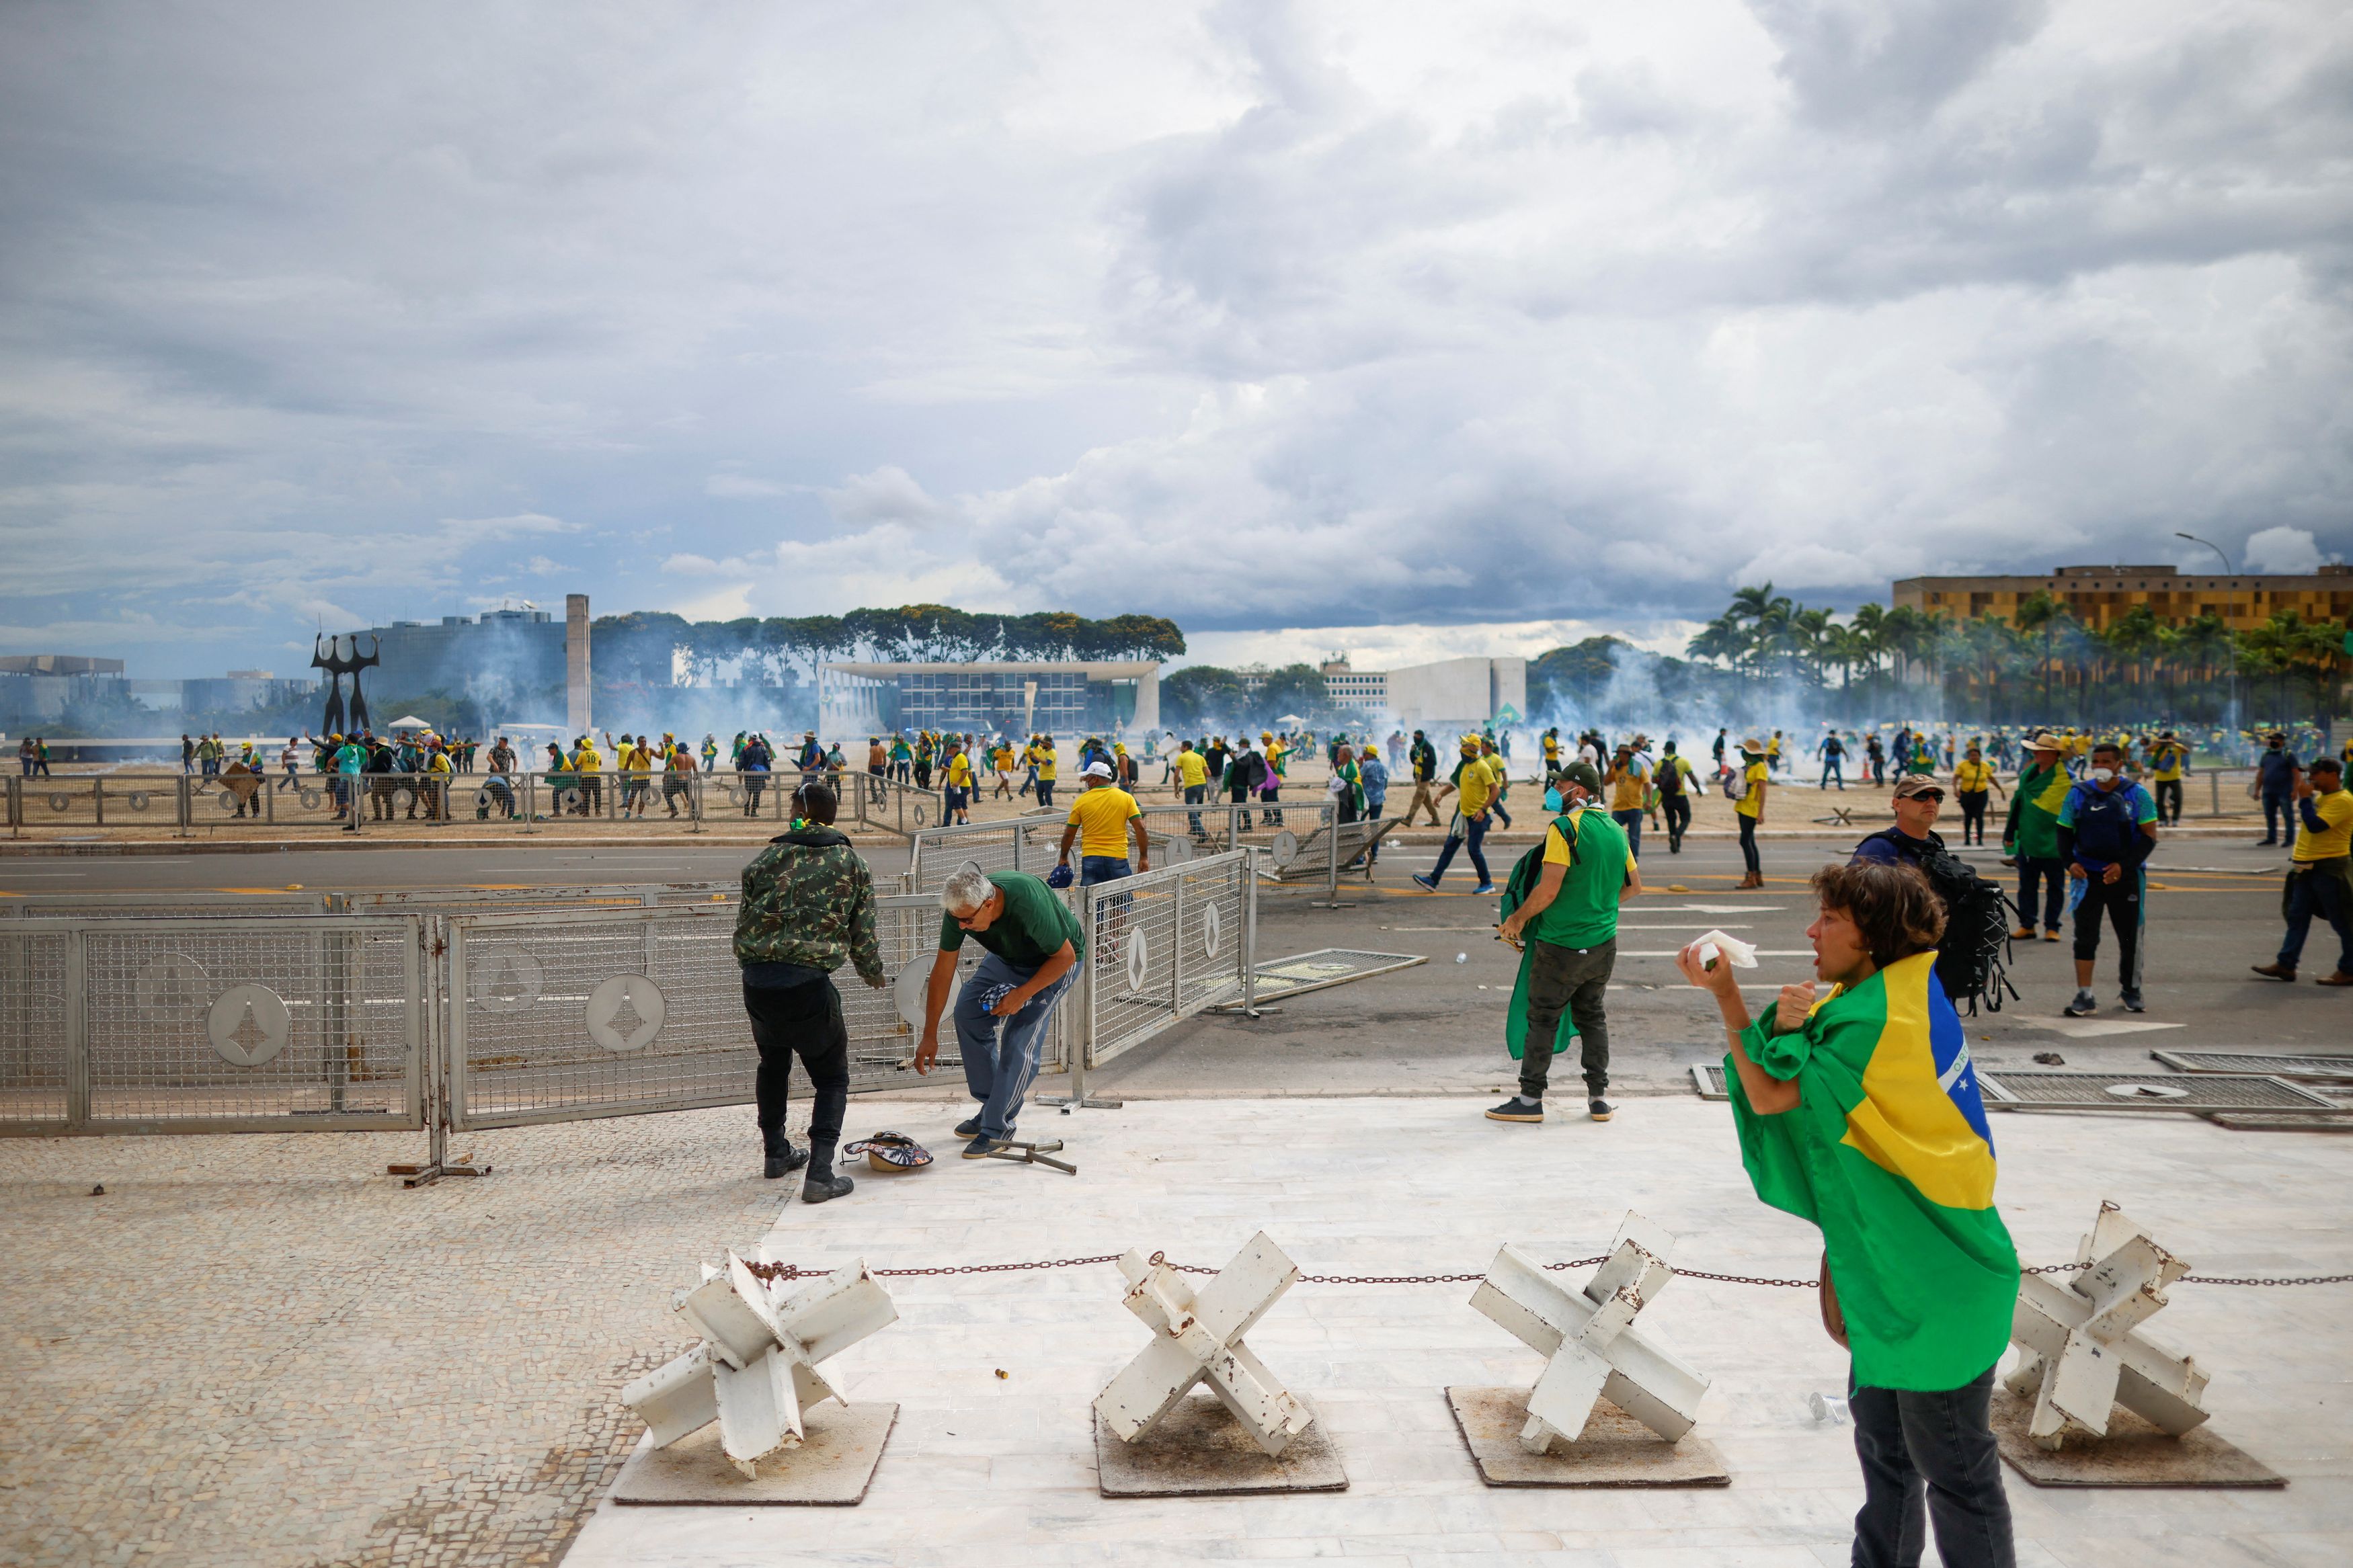 Χάος στη Βραζιλία: Υποστηρικτές του Μπολσονάρο εισέβαλαν σε κυβερνητικά κτίρια